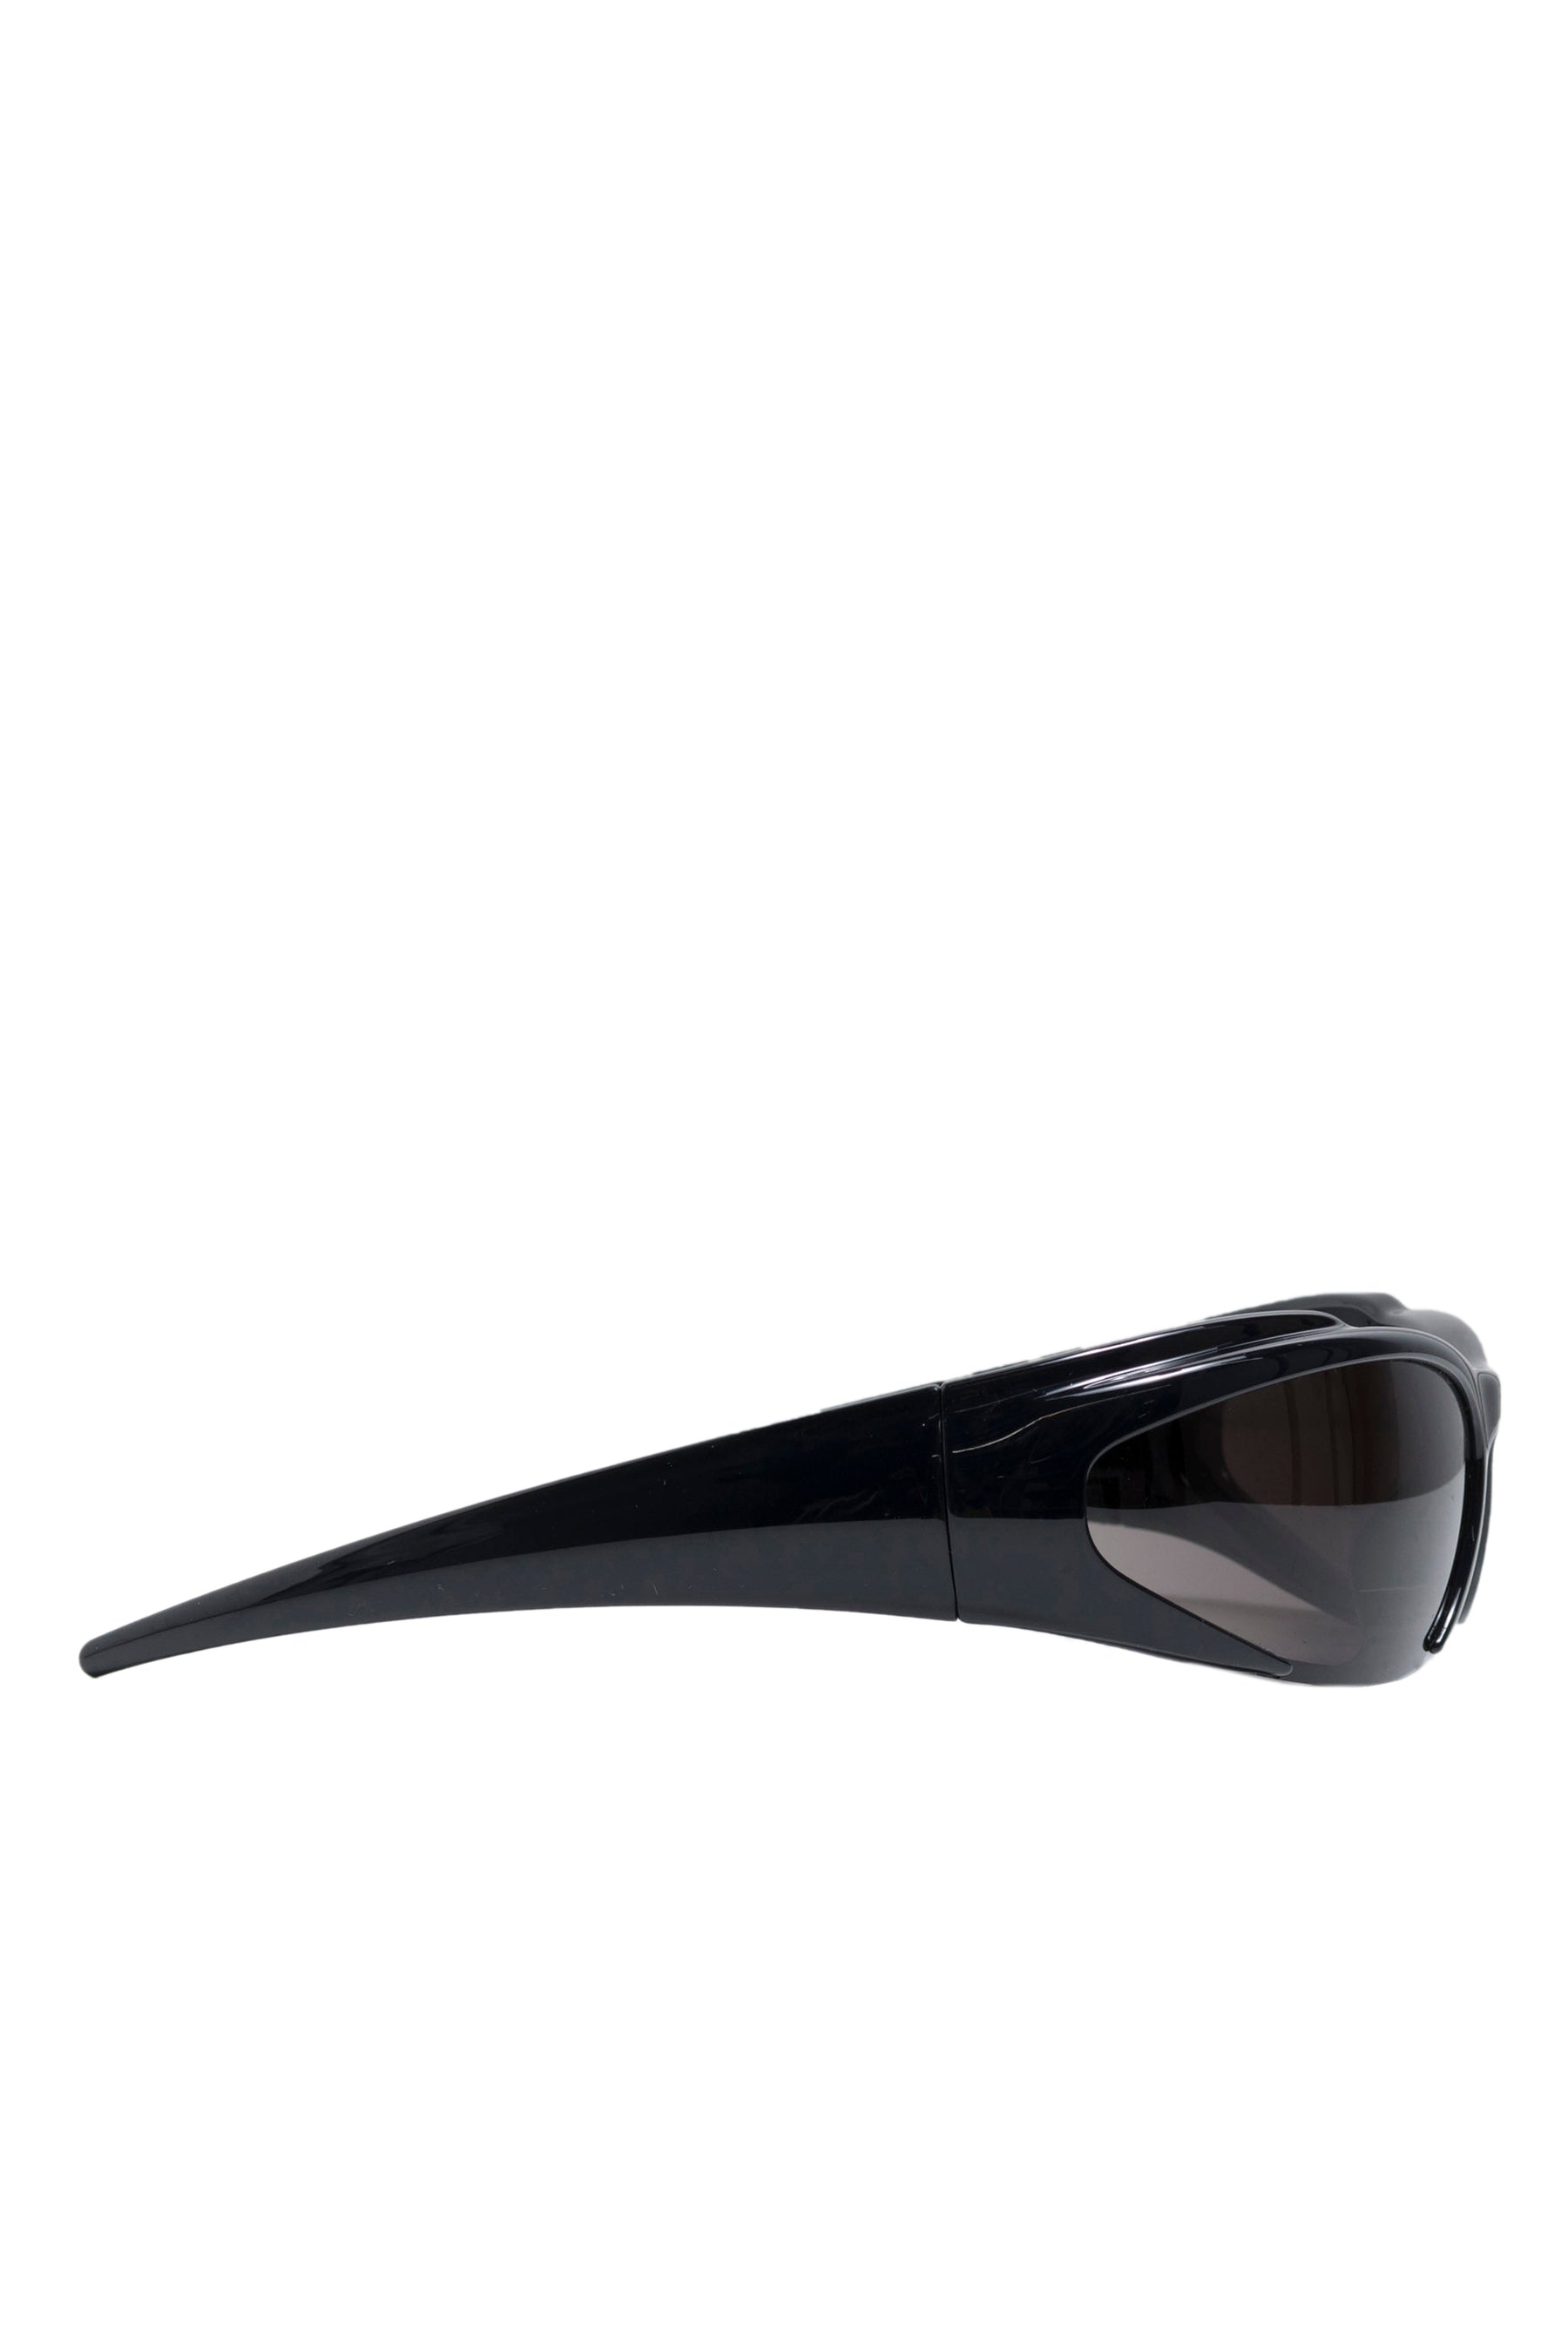 Off-White Virgil White 0145 Sunglasses